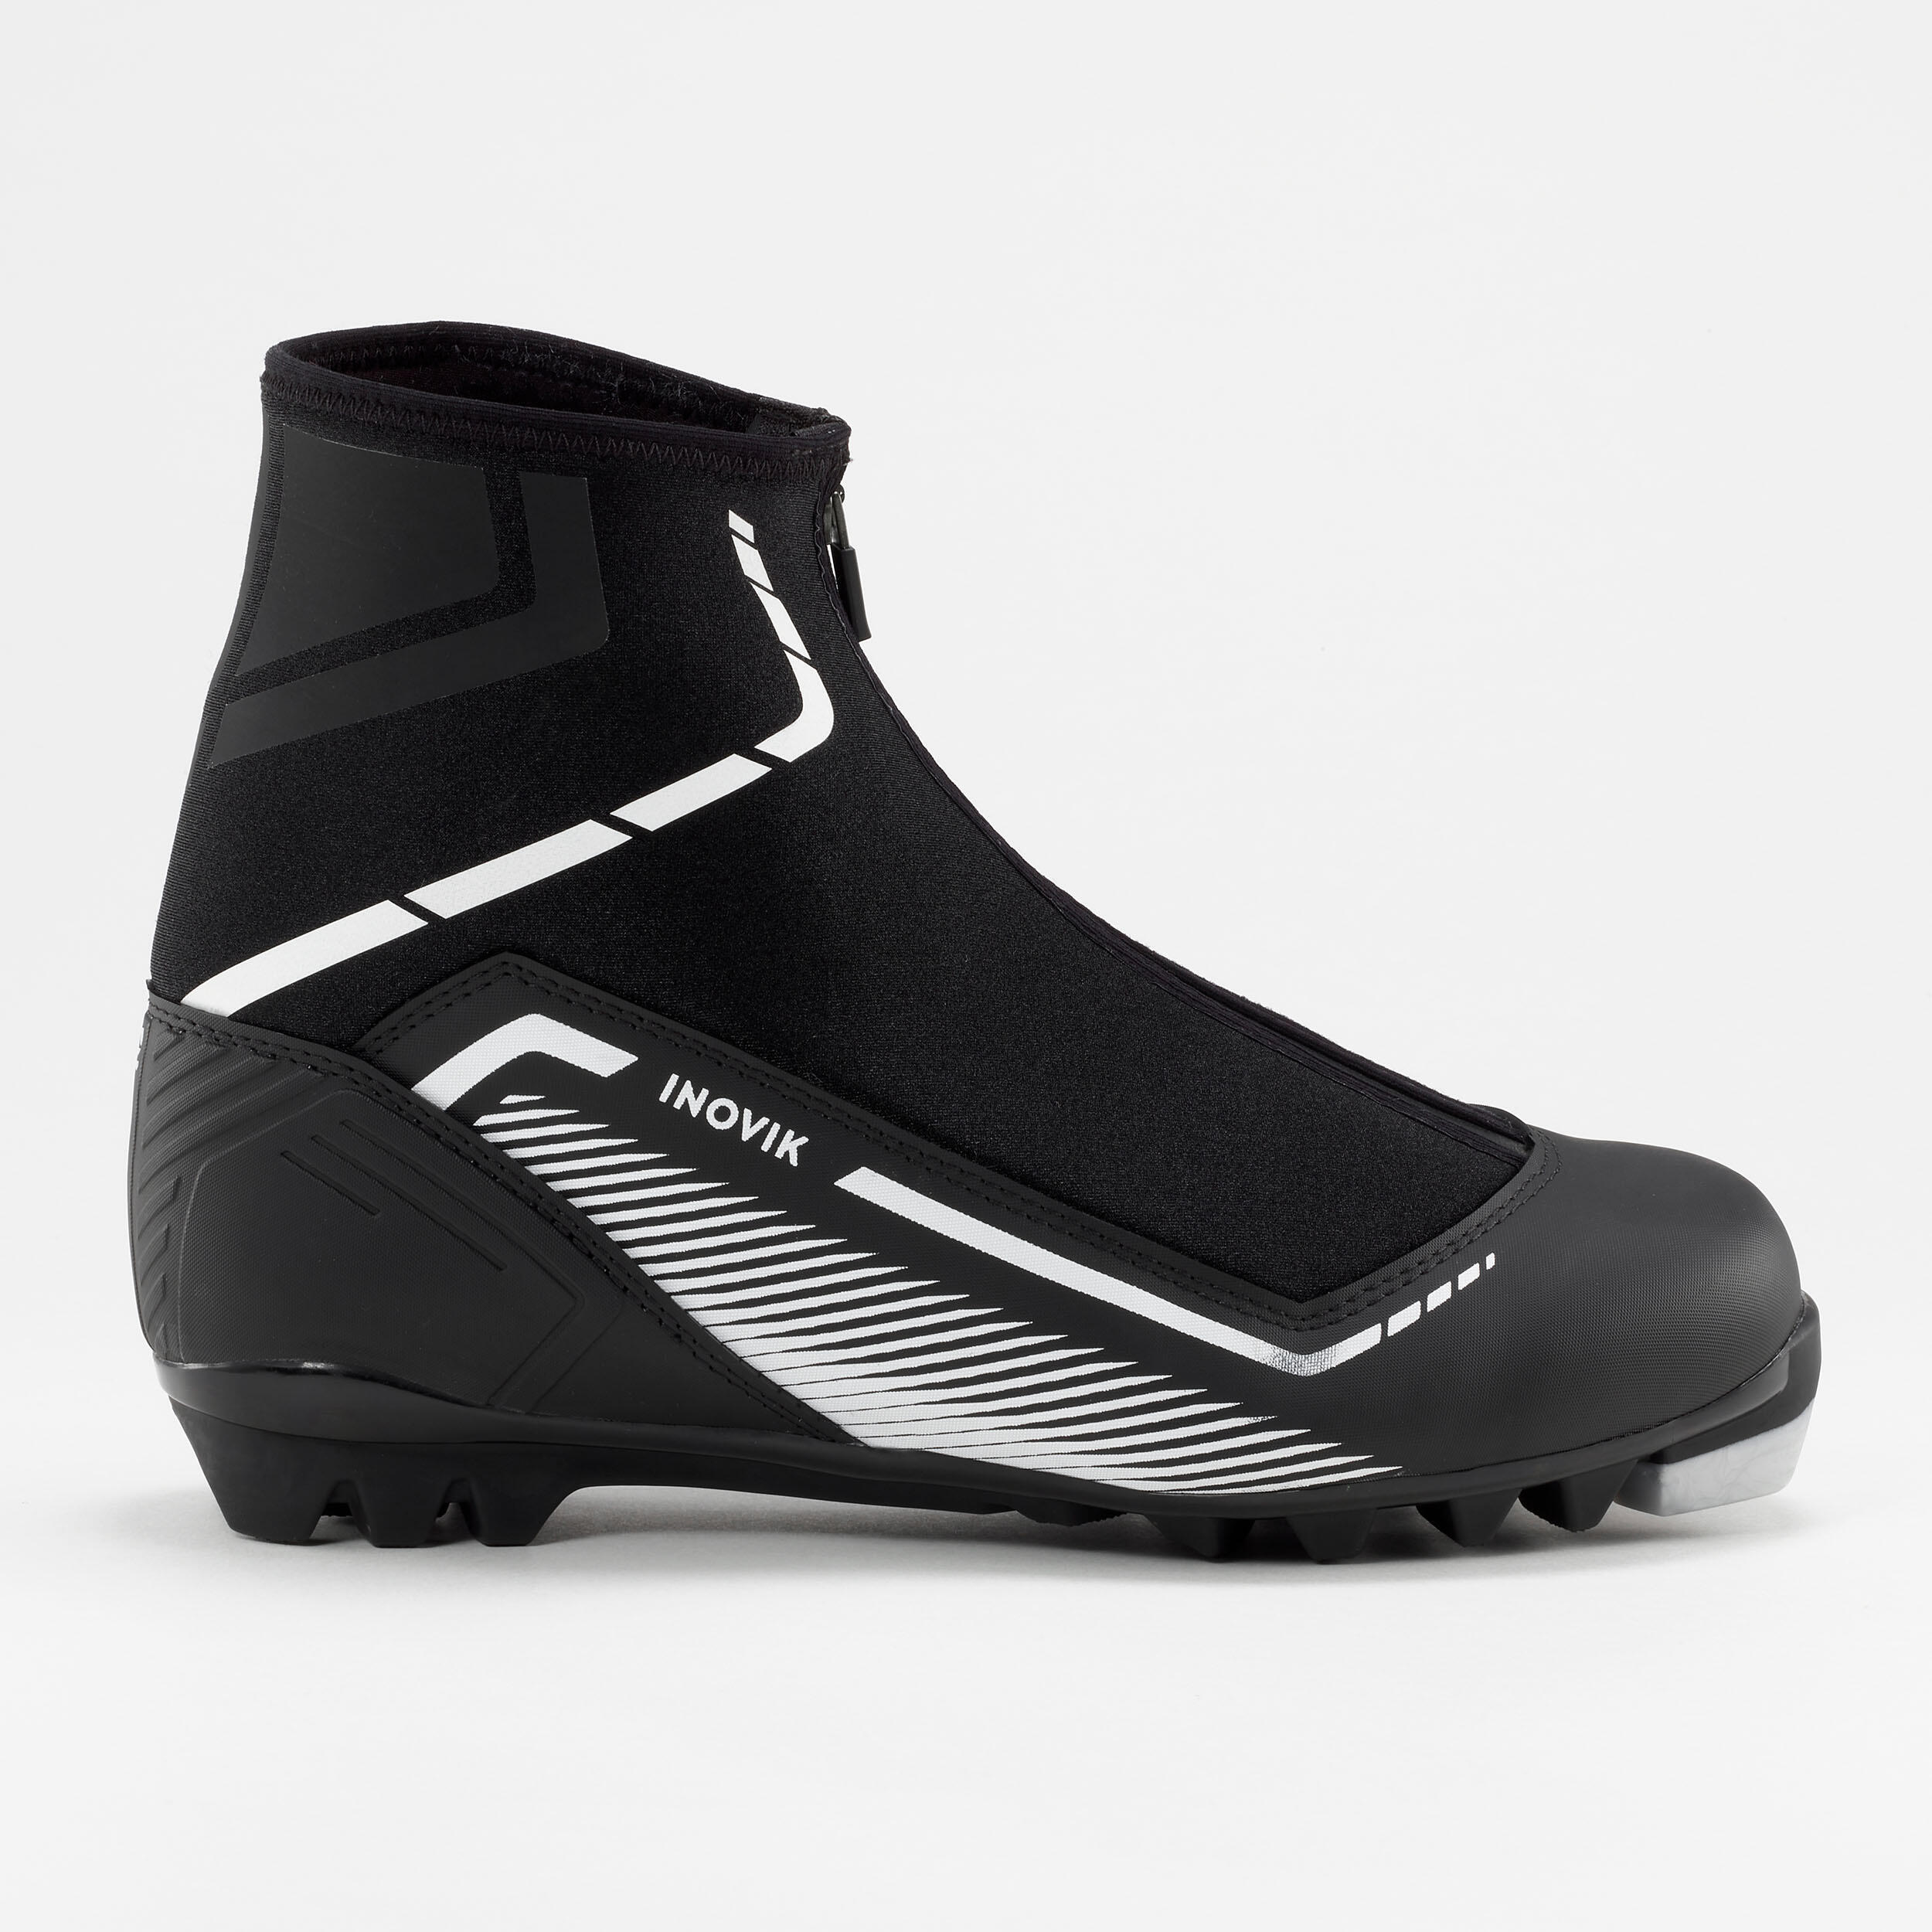 Лыжные ботинки Decathlon Inovik XC S150, черный maze обувь на шнурках